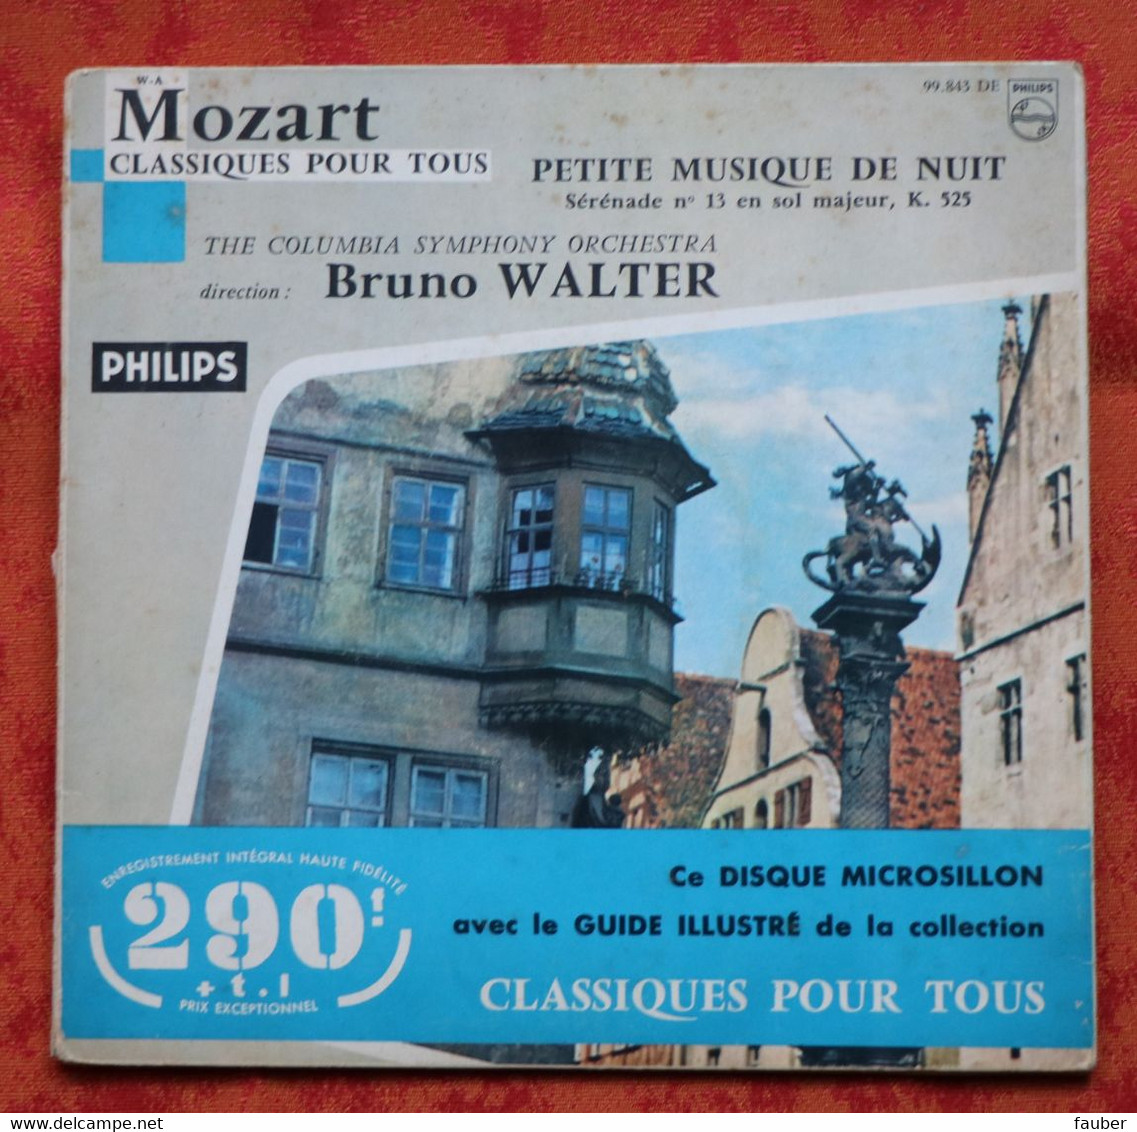 Mozart - Petite Musique De Nuit - Colombia Symphony Orchestra - Bruno Walter - Philips - Classique